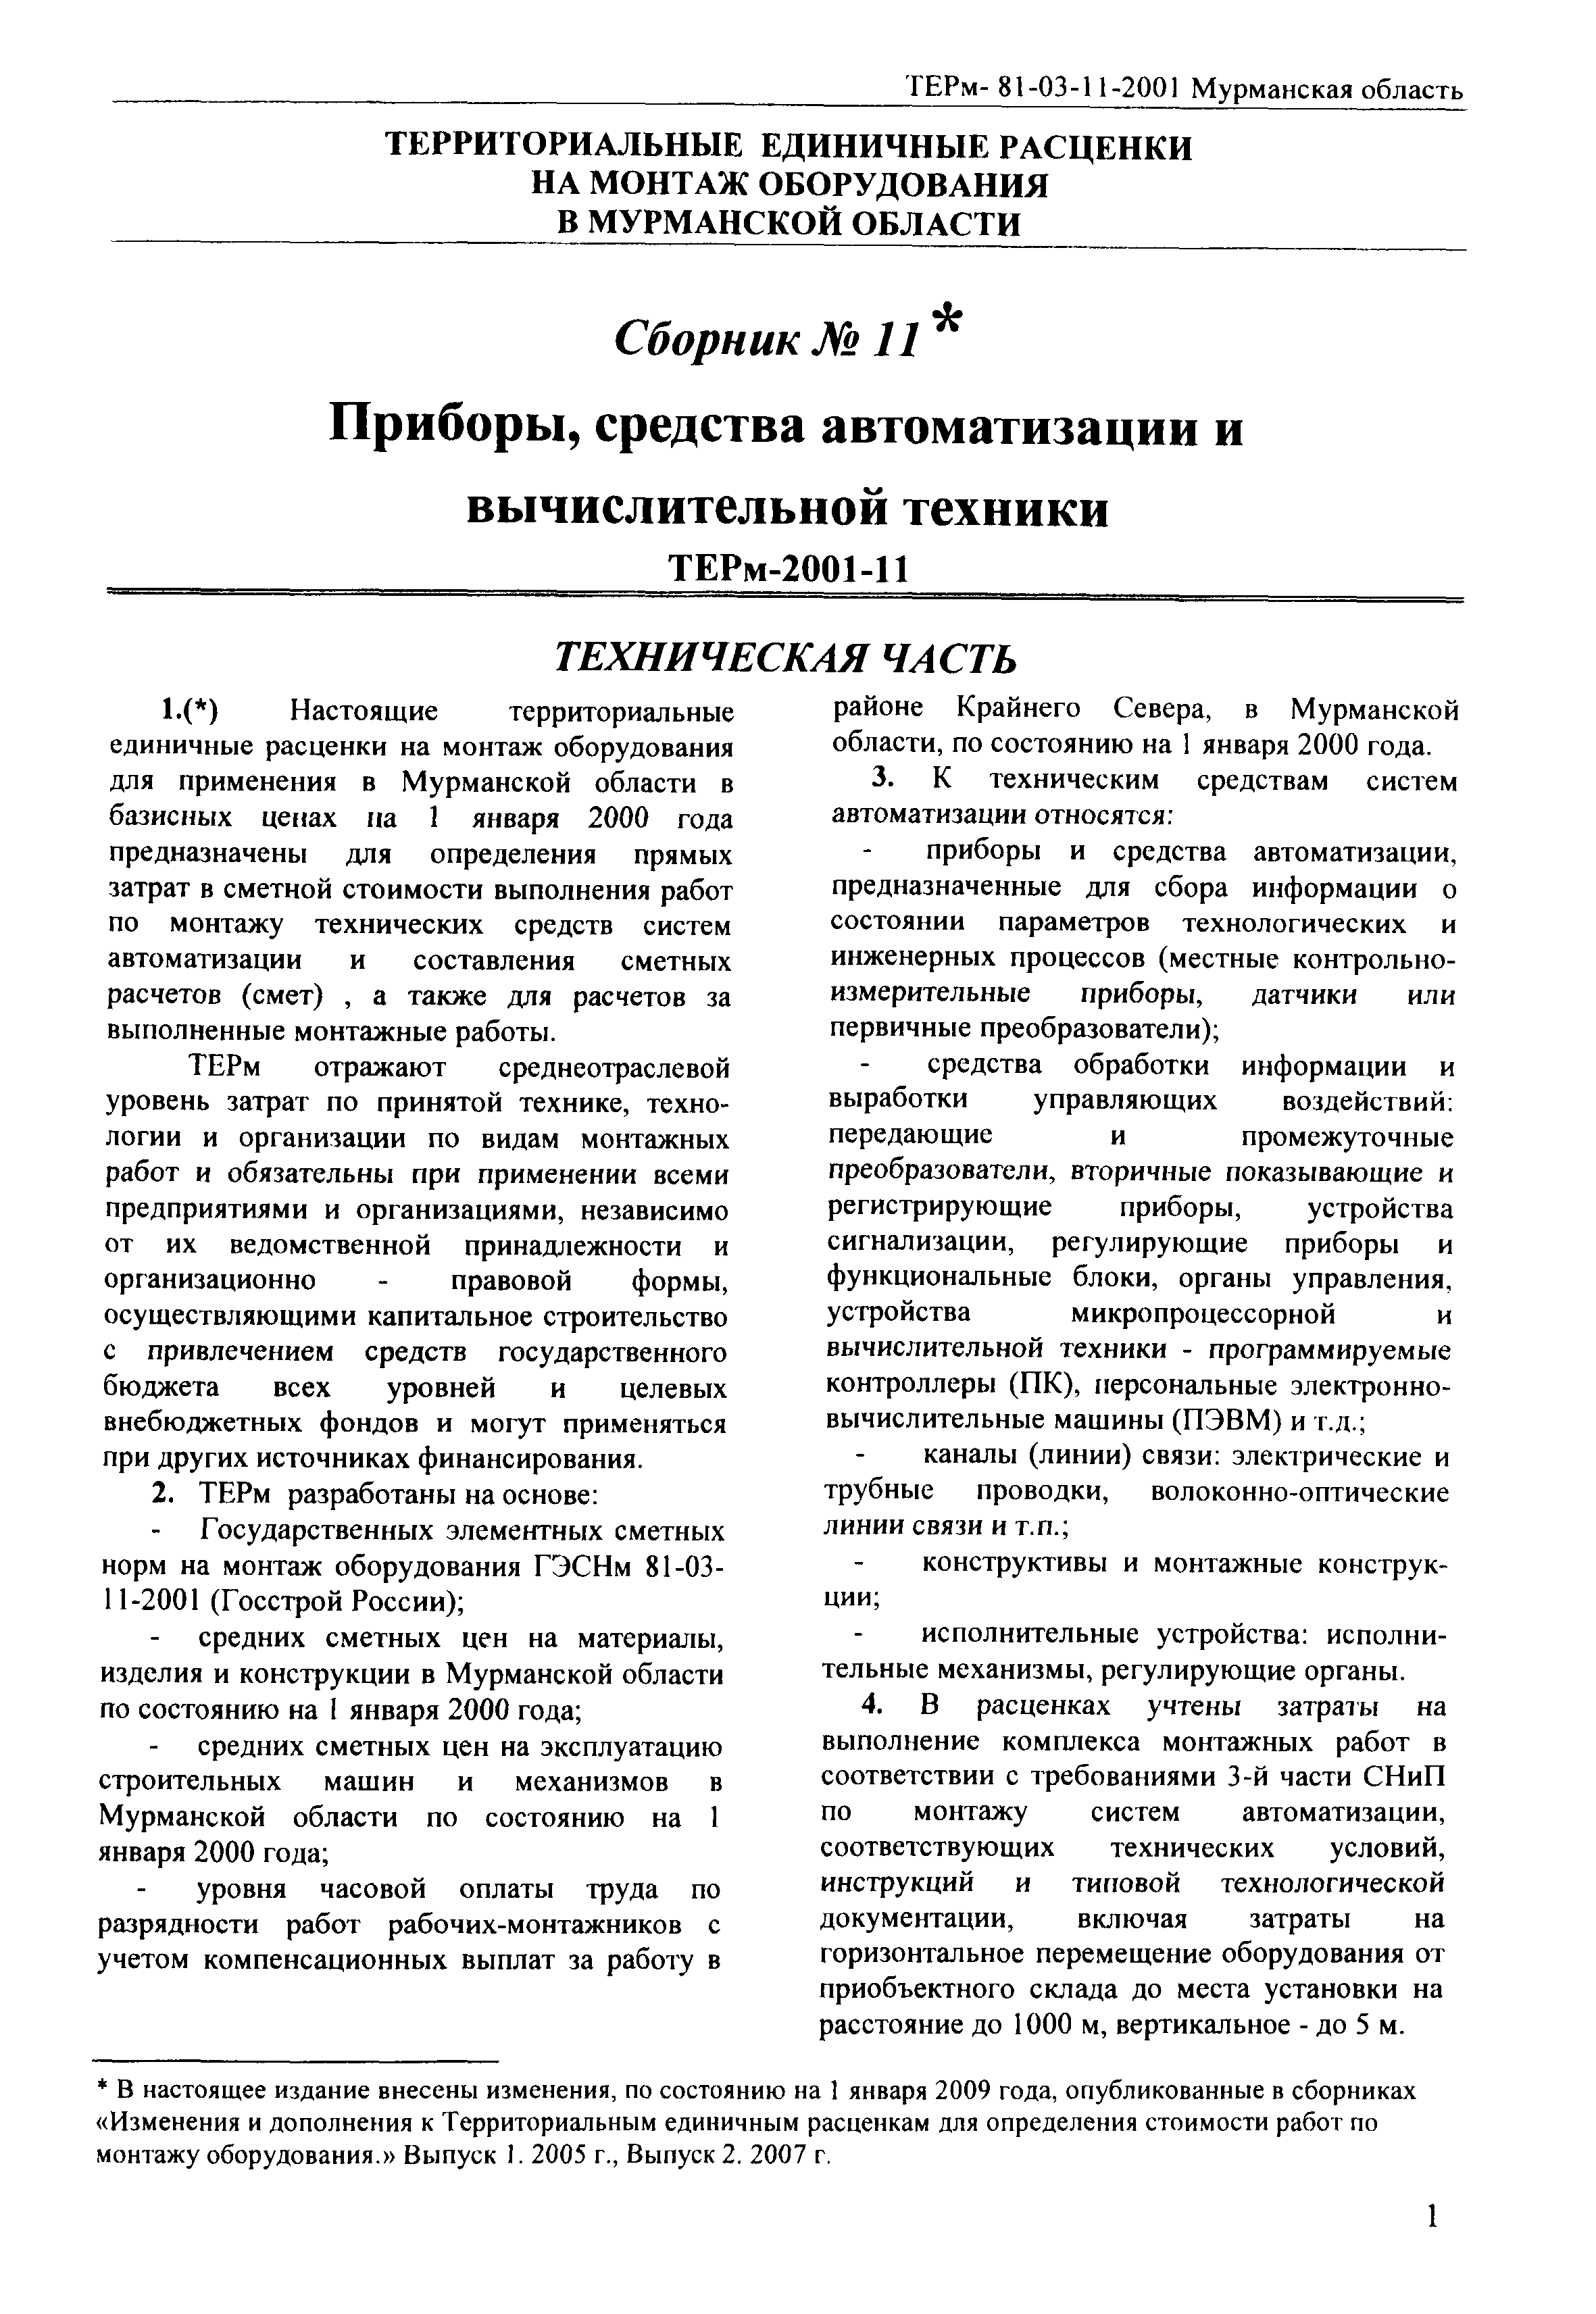 ТЕРм Мурманская область 2001-11